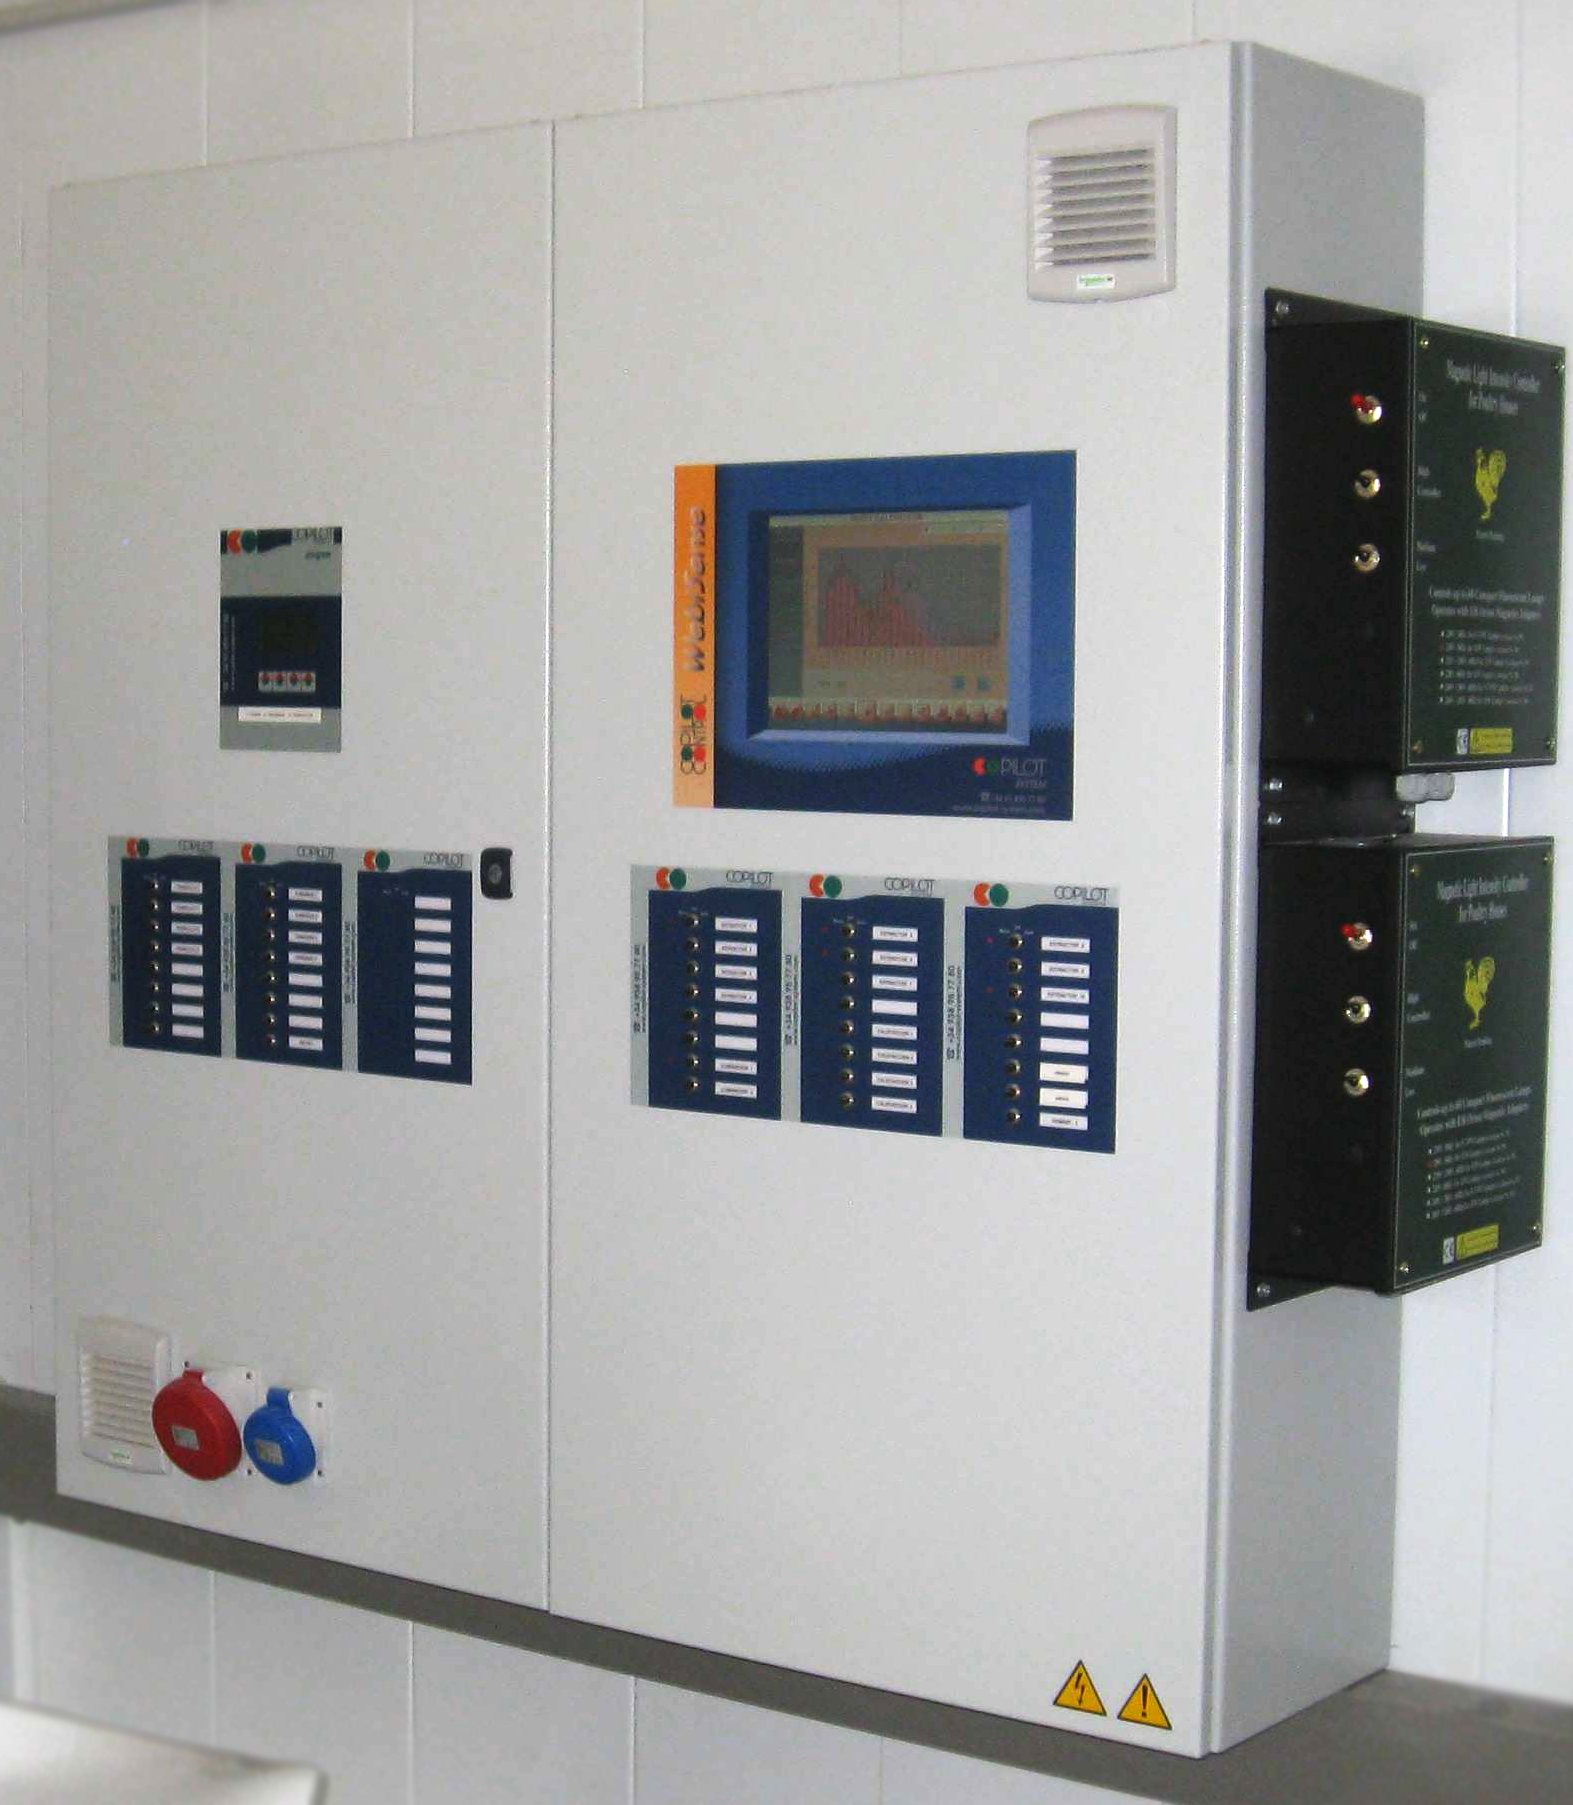 Hablamos sobre un armario eléctrico - Opyce - Servicios Eléctricos